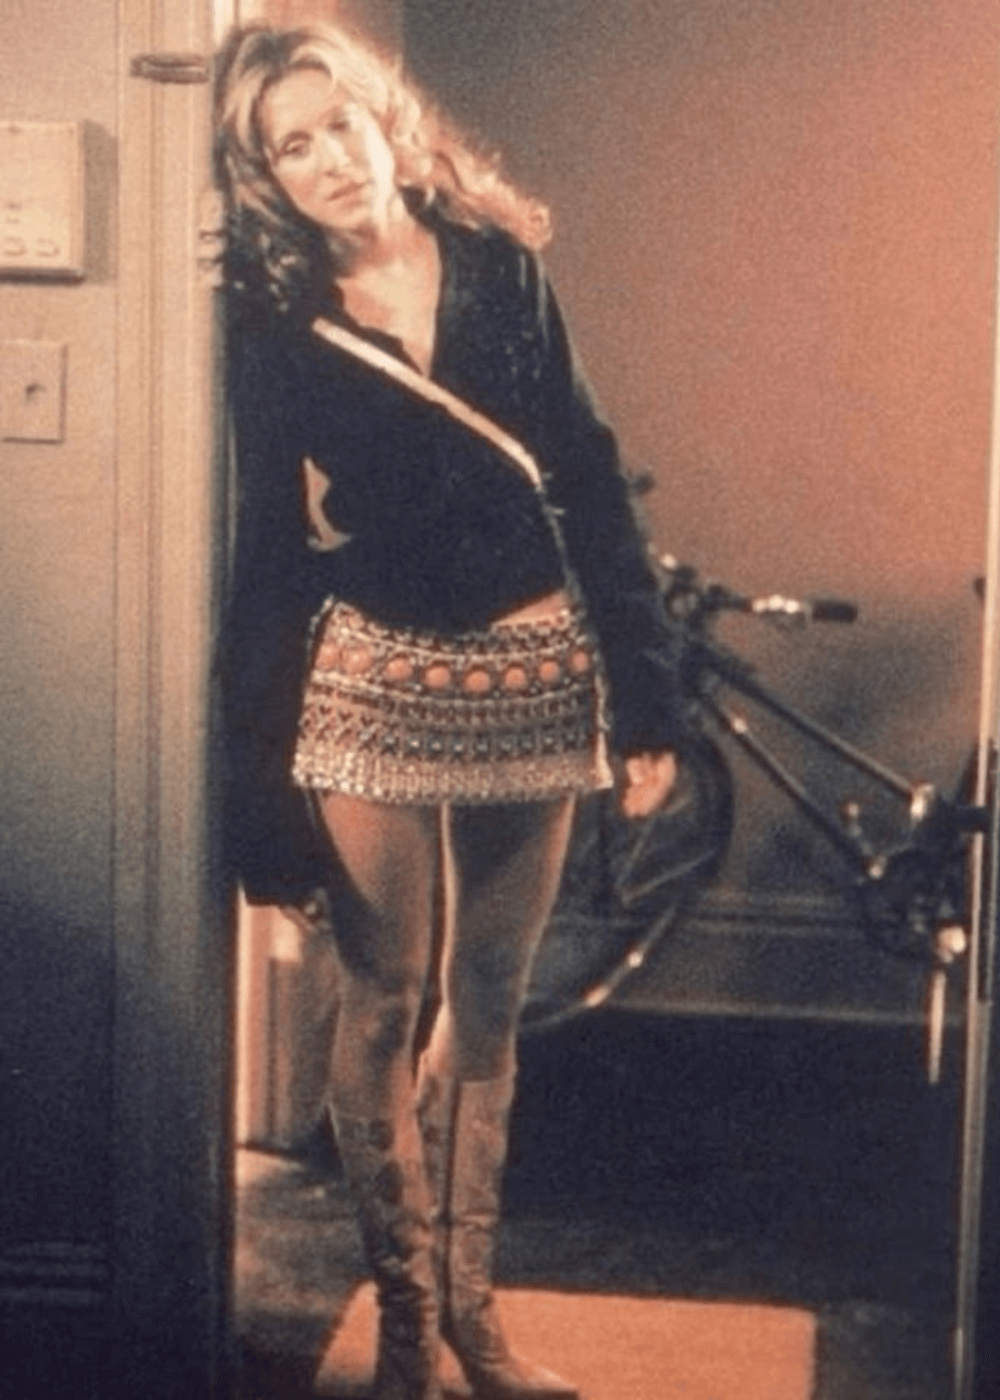 Sarah Jessica Parker - minissaia estampada, bota e blusa preta de manga longa - Carrie Bradshaw - outono - mulher em pé em uma sala - https://stealthelook.com.br